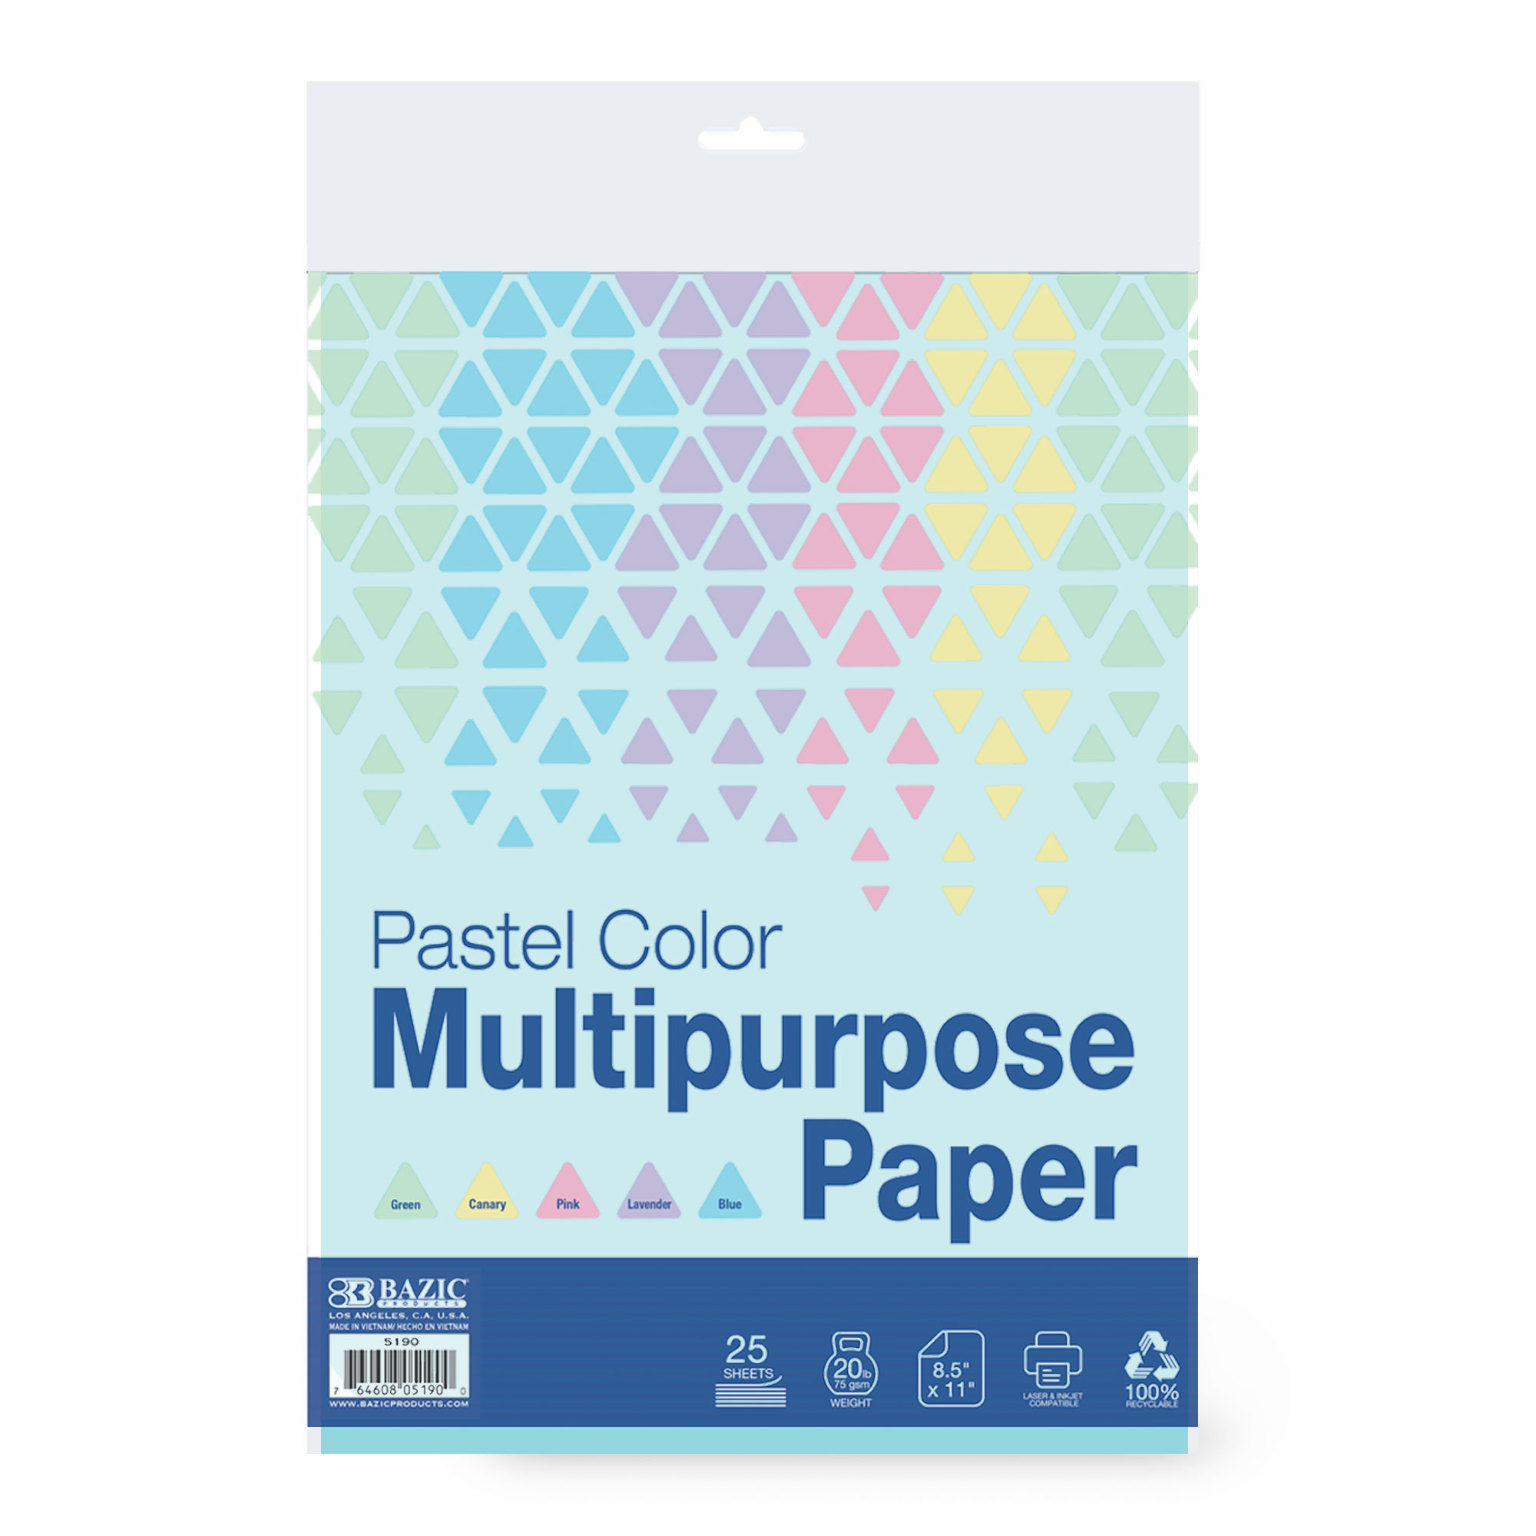 Wholesale White Copy Paper - Bulk White Printer Paper Cheap - DollarDays